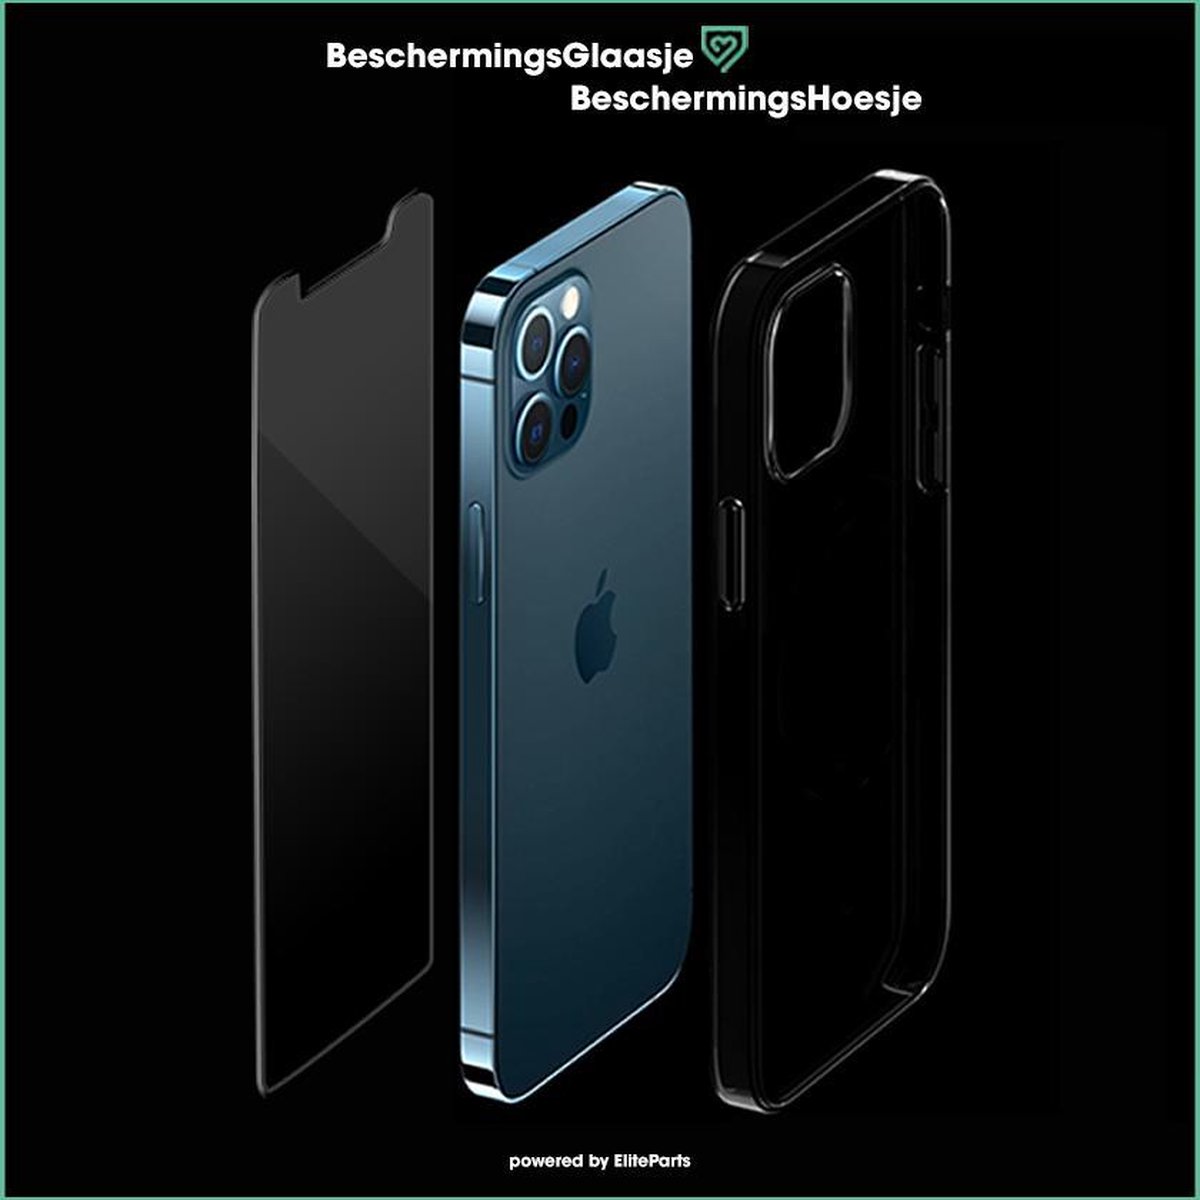 iPhone 12 Pro combo deal BeschermingsHoesje x BeschermingsGlaasje| 6,1 inch| Elite Parts NL